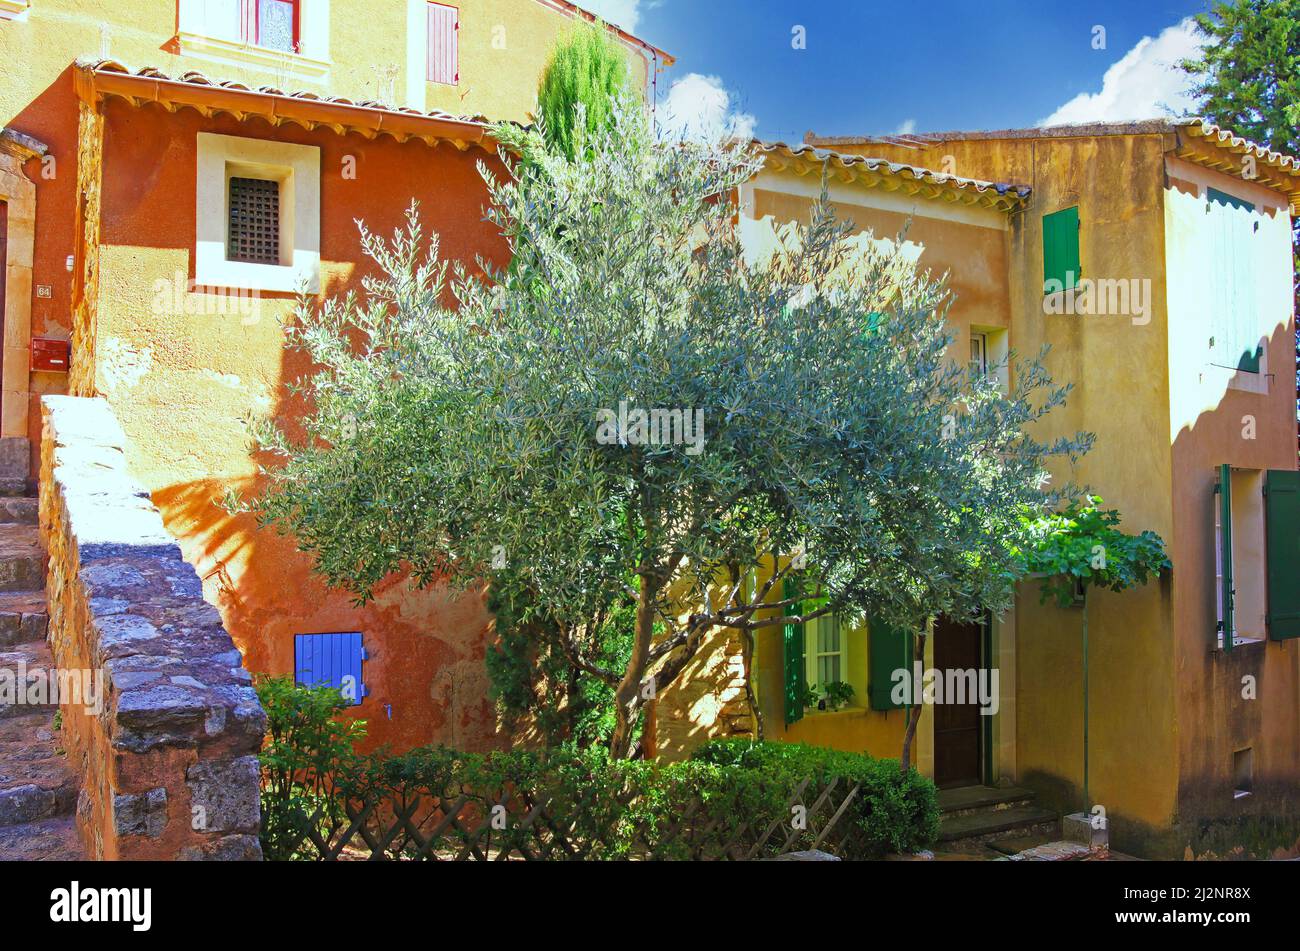 Roussillon, France - octobre 9. 2019: Vue sur la maison traditionnelle en pierre naturelle ocre avec grand olivier vert dans cour avant colorée Banque D'Images